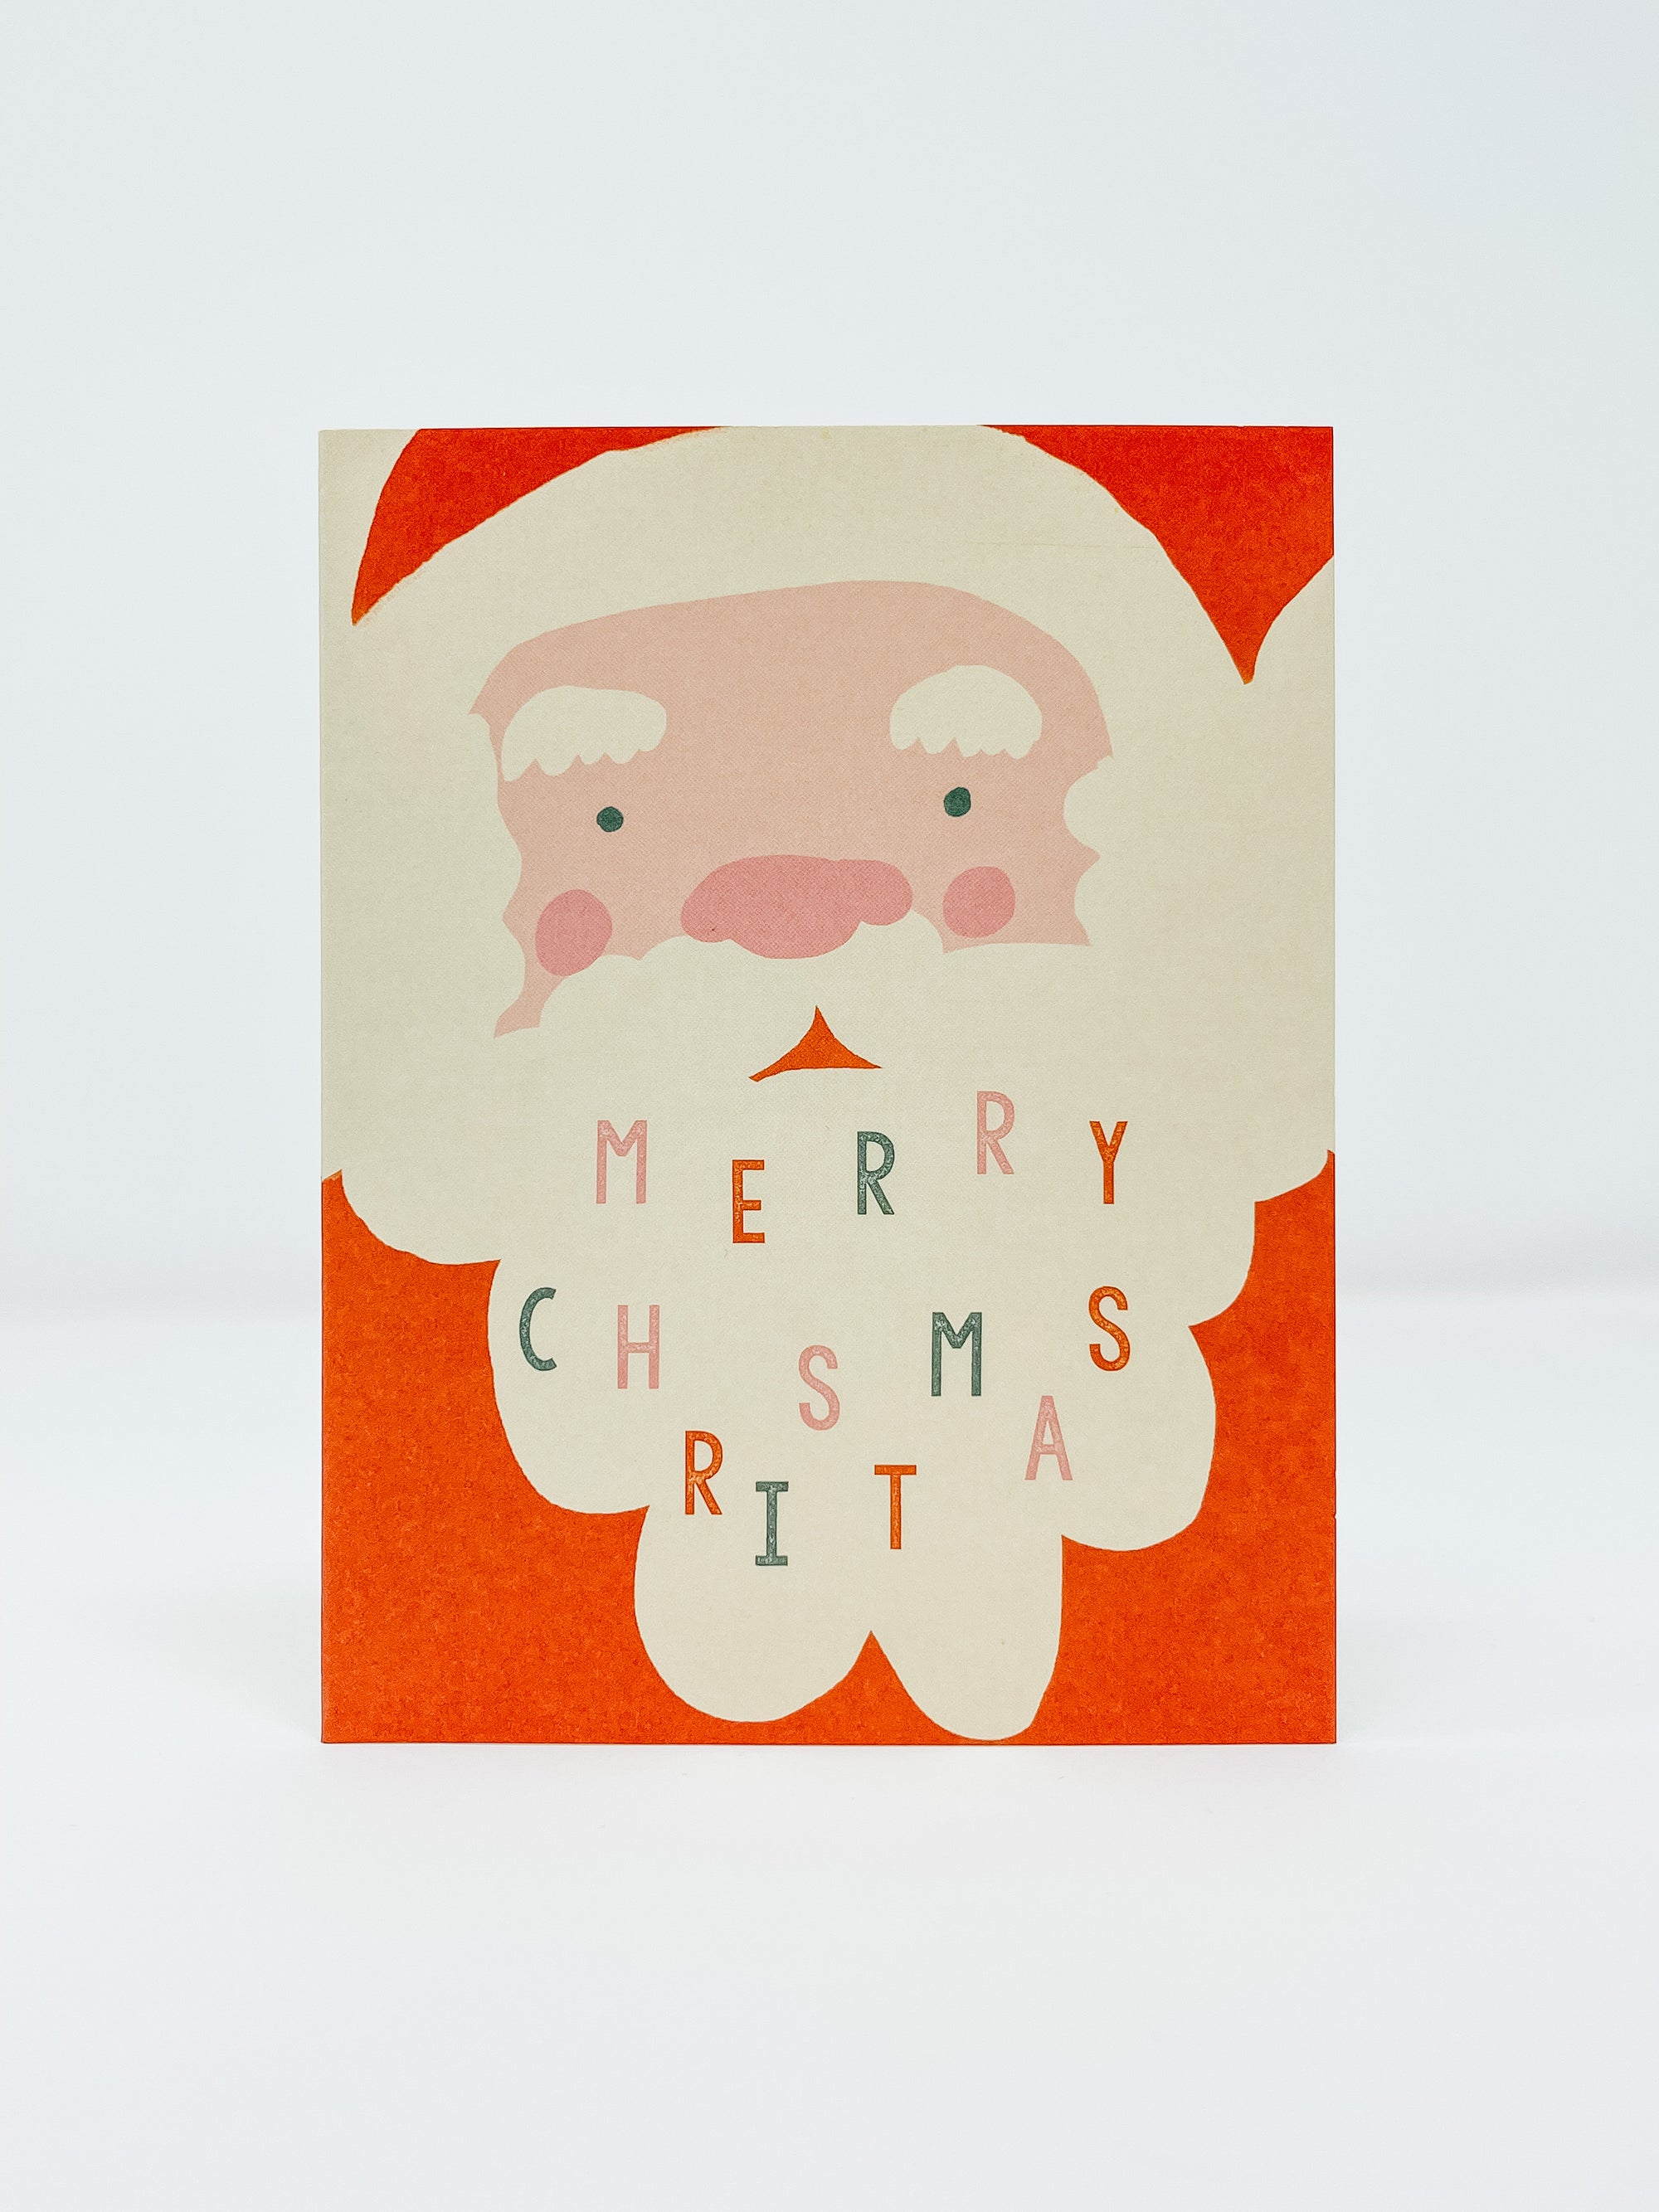 Santa Merry Christmas Card